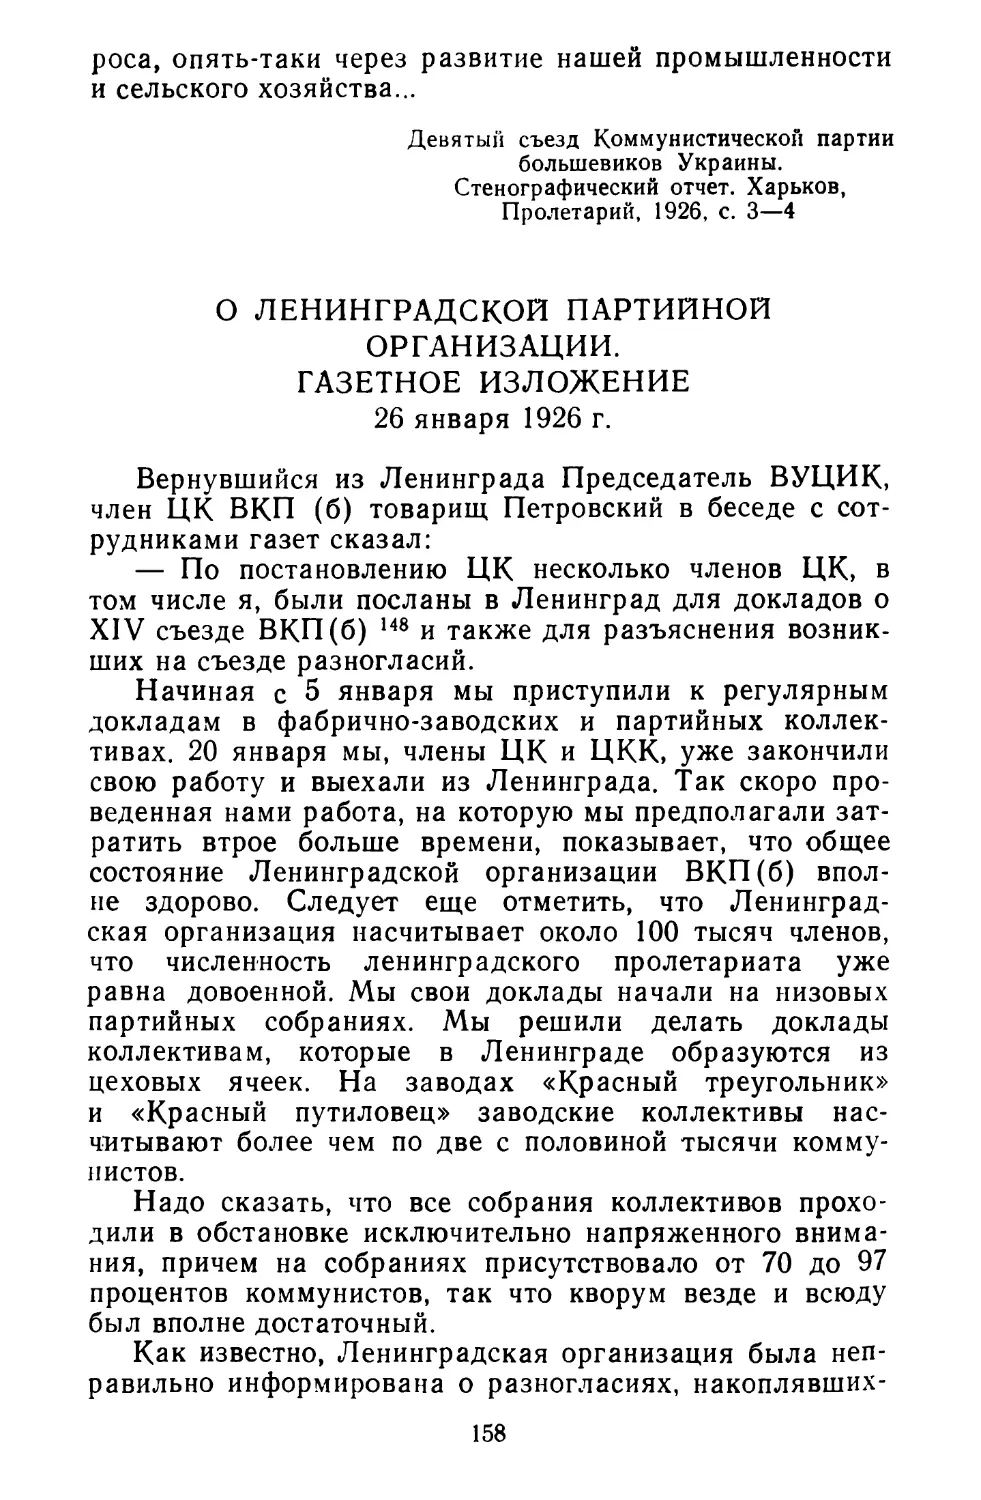 О Ленинградской партийной организации. Газетное изложение. 26 января 1926 г.